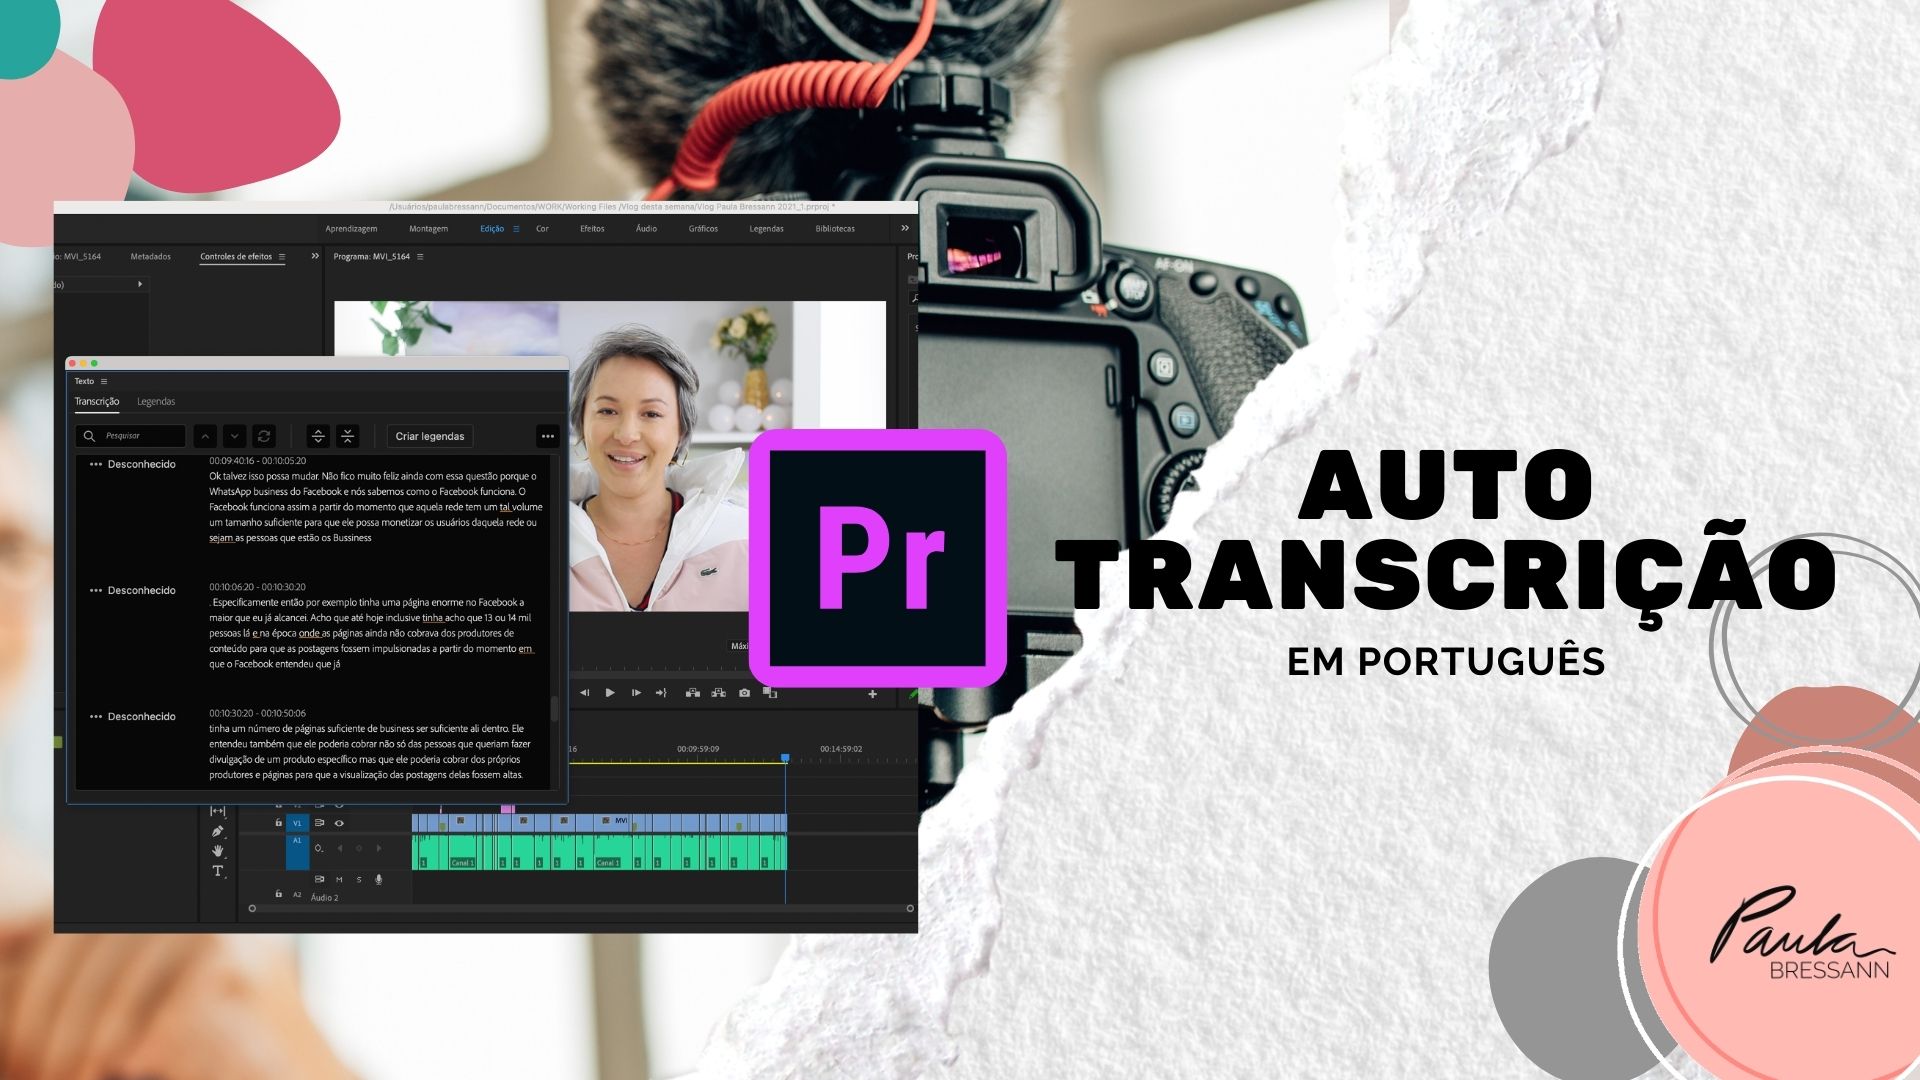 Adobe Premiere: Transcrição automática de vídeos agora disponível em PORTUGUÊS!